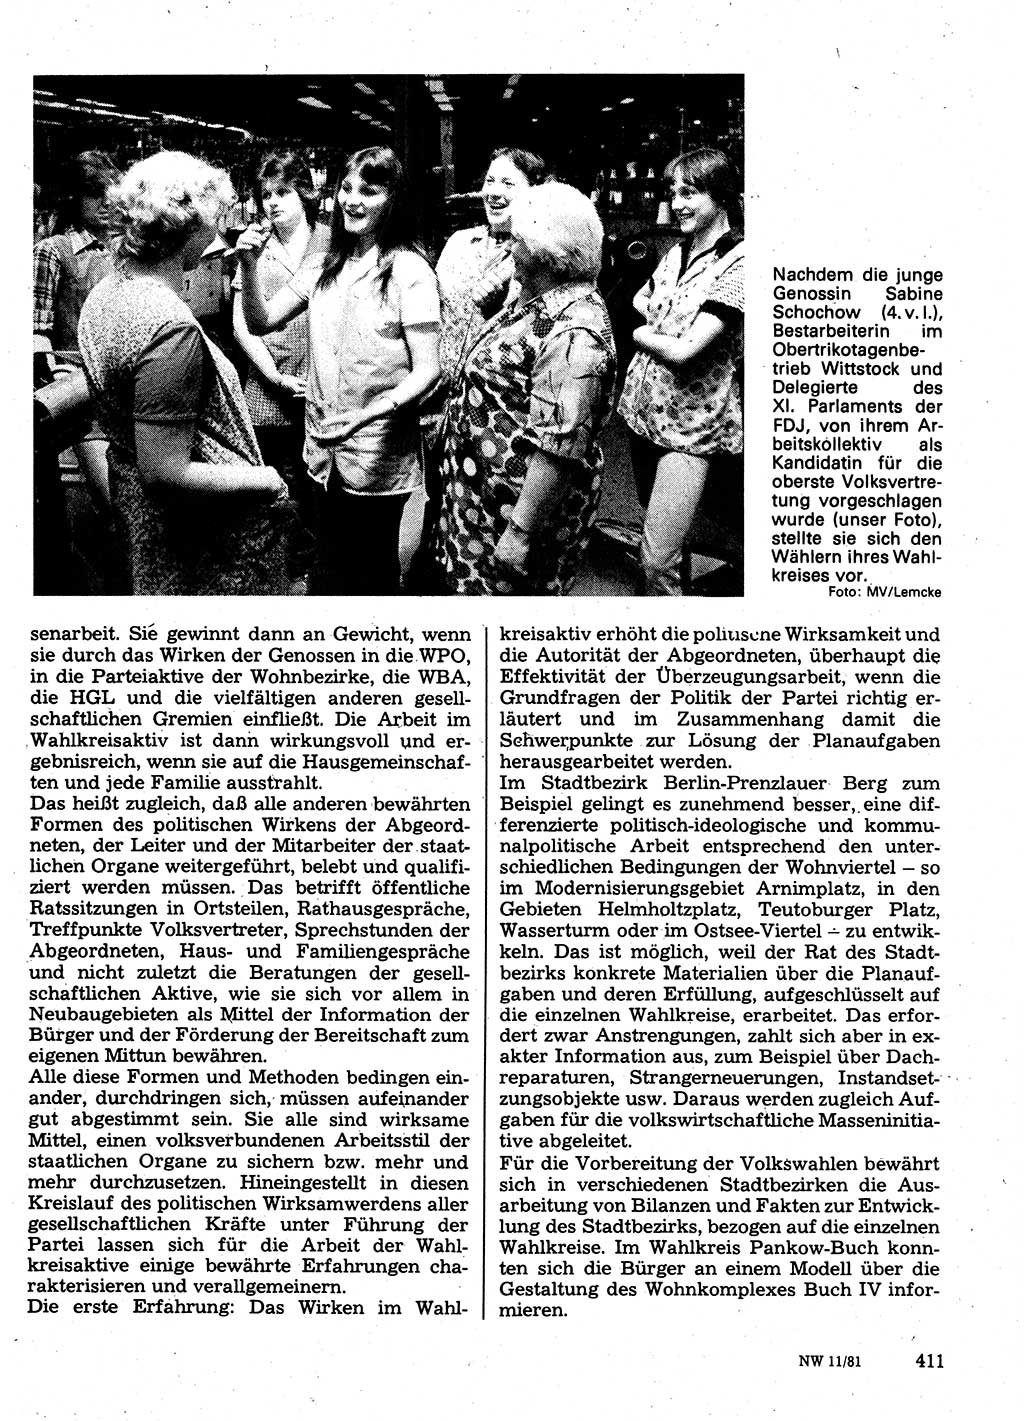 Neuer Weg (NW), Organ des Zentralkomitees (ZK) der SED (Sozialistische Einheitspartei Deutschlands) für Fragen des Parteilebens, 36. Jahrgang [Deutsche Demokratische Republik (DDR)] 1981, Seite 411 (NW ZK SED DDR 1981, S. 411)